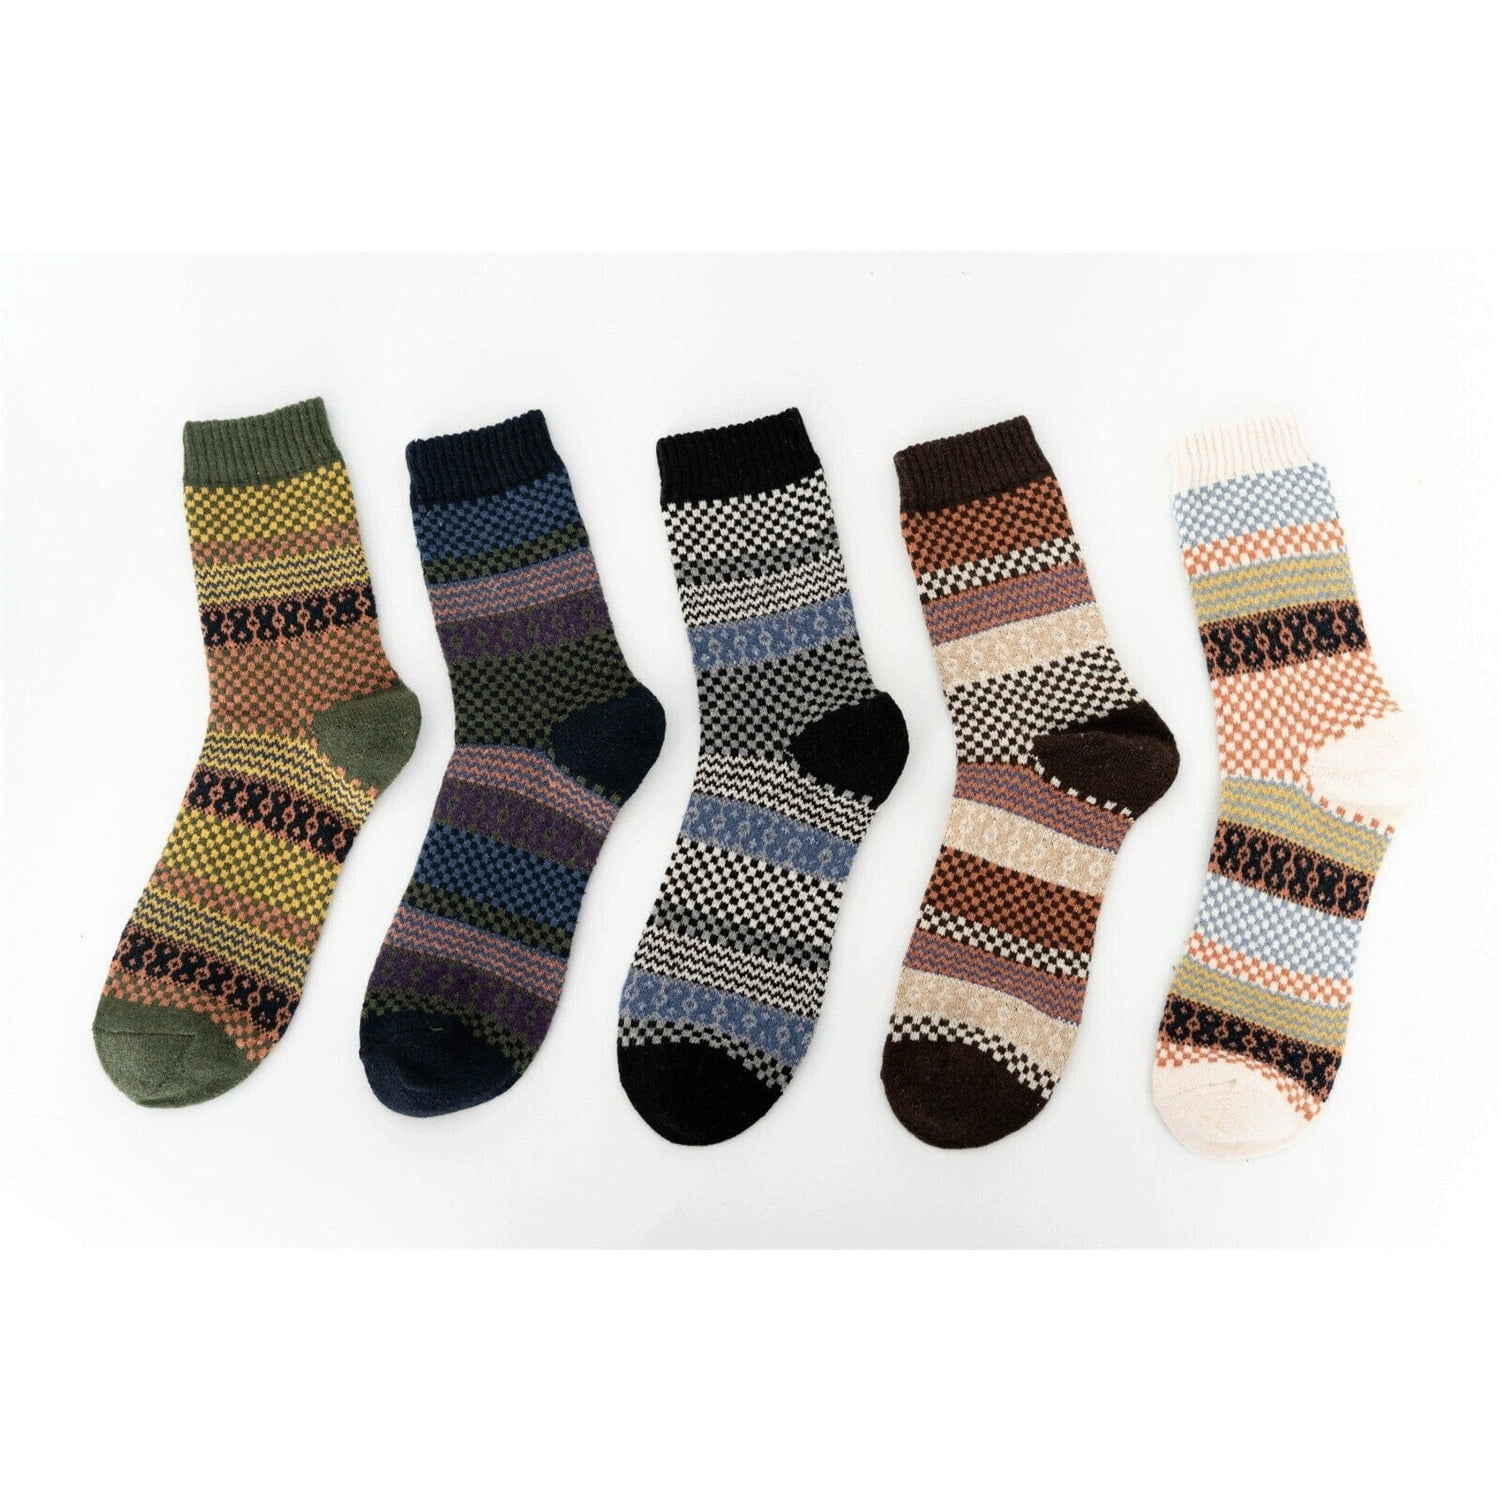 Merino Wool Socks for Women